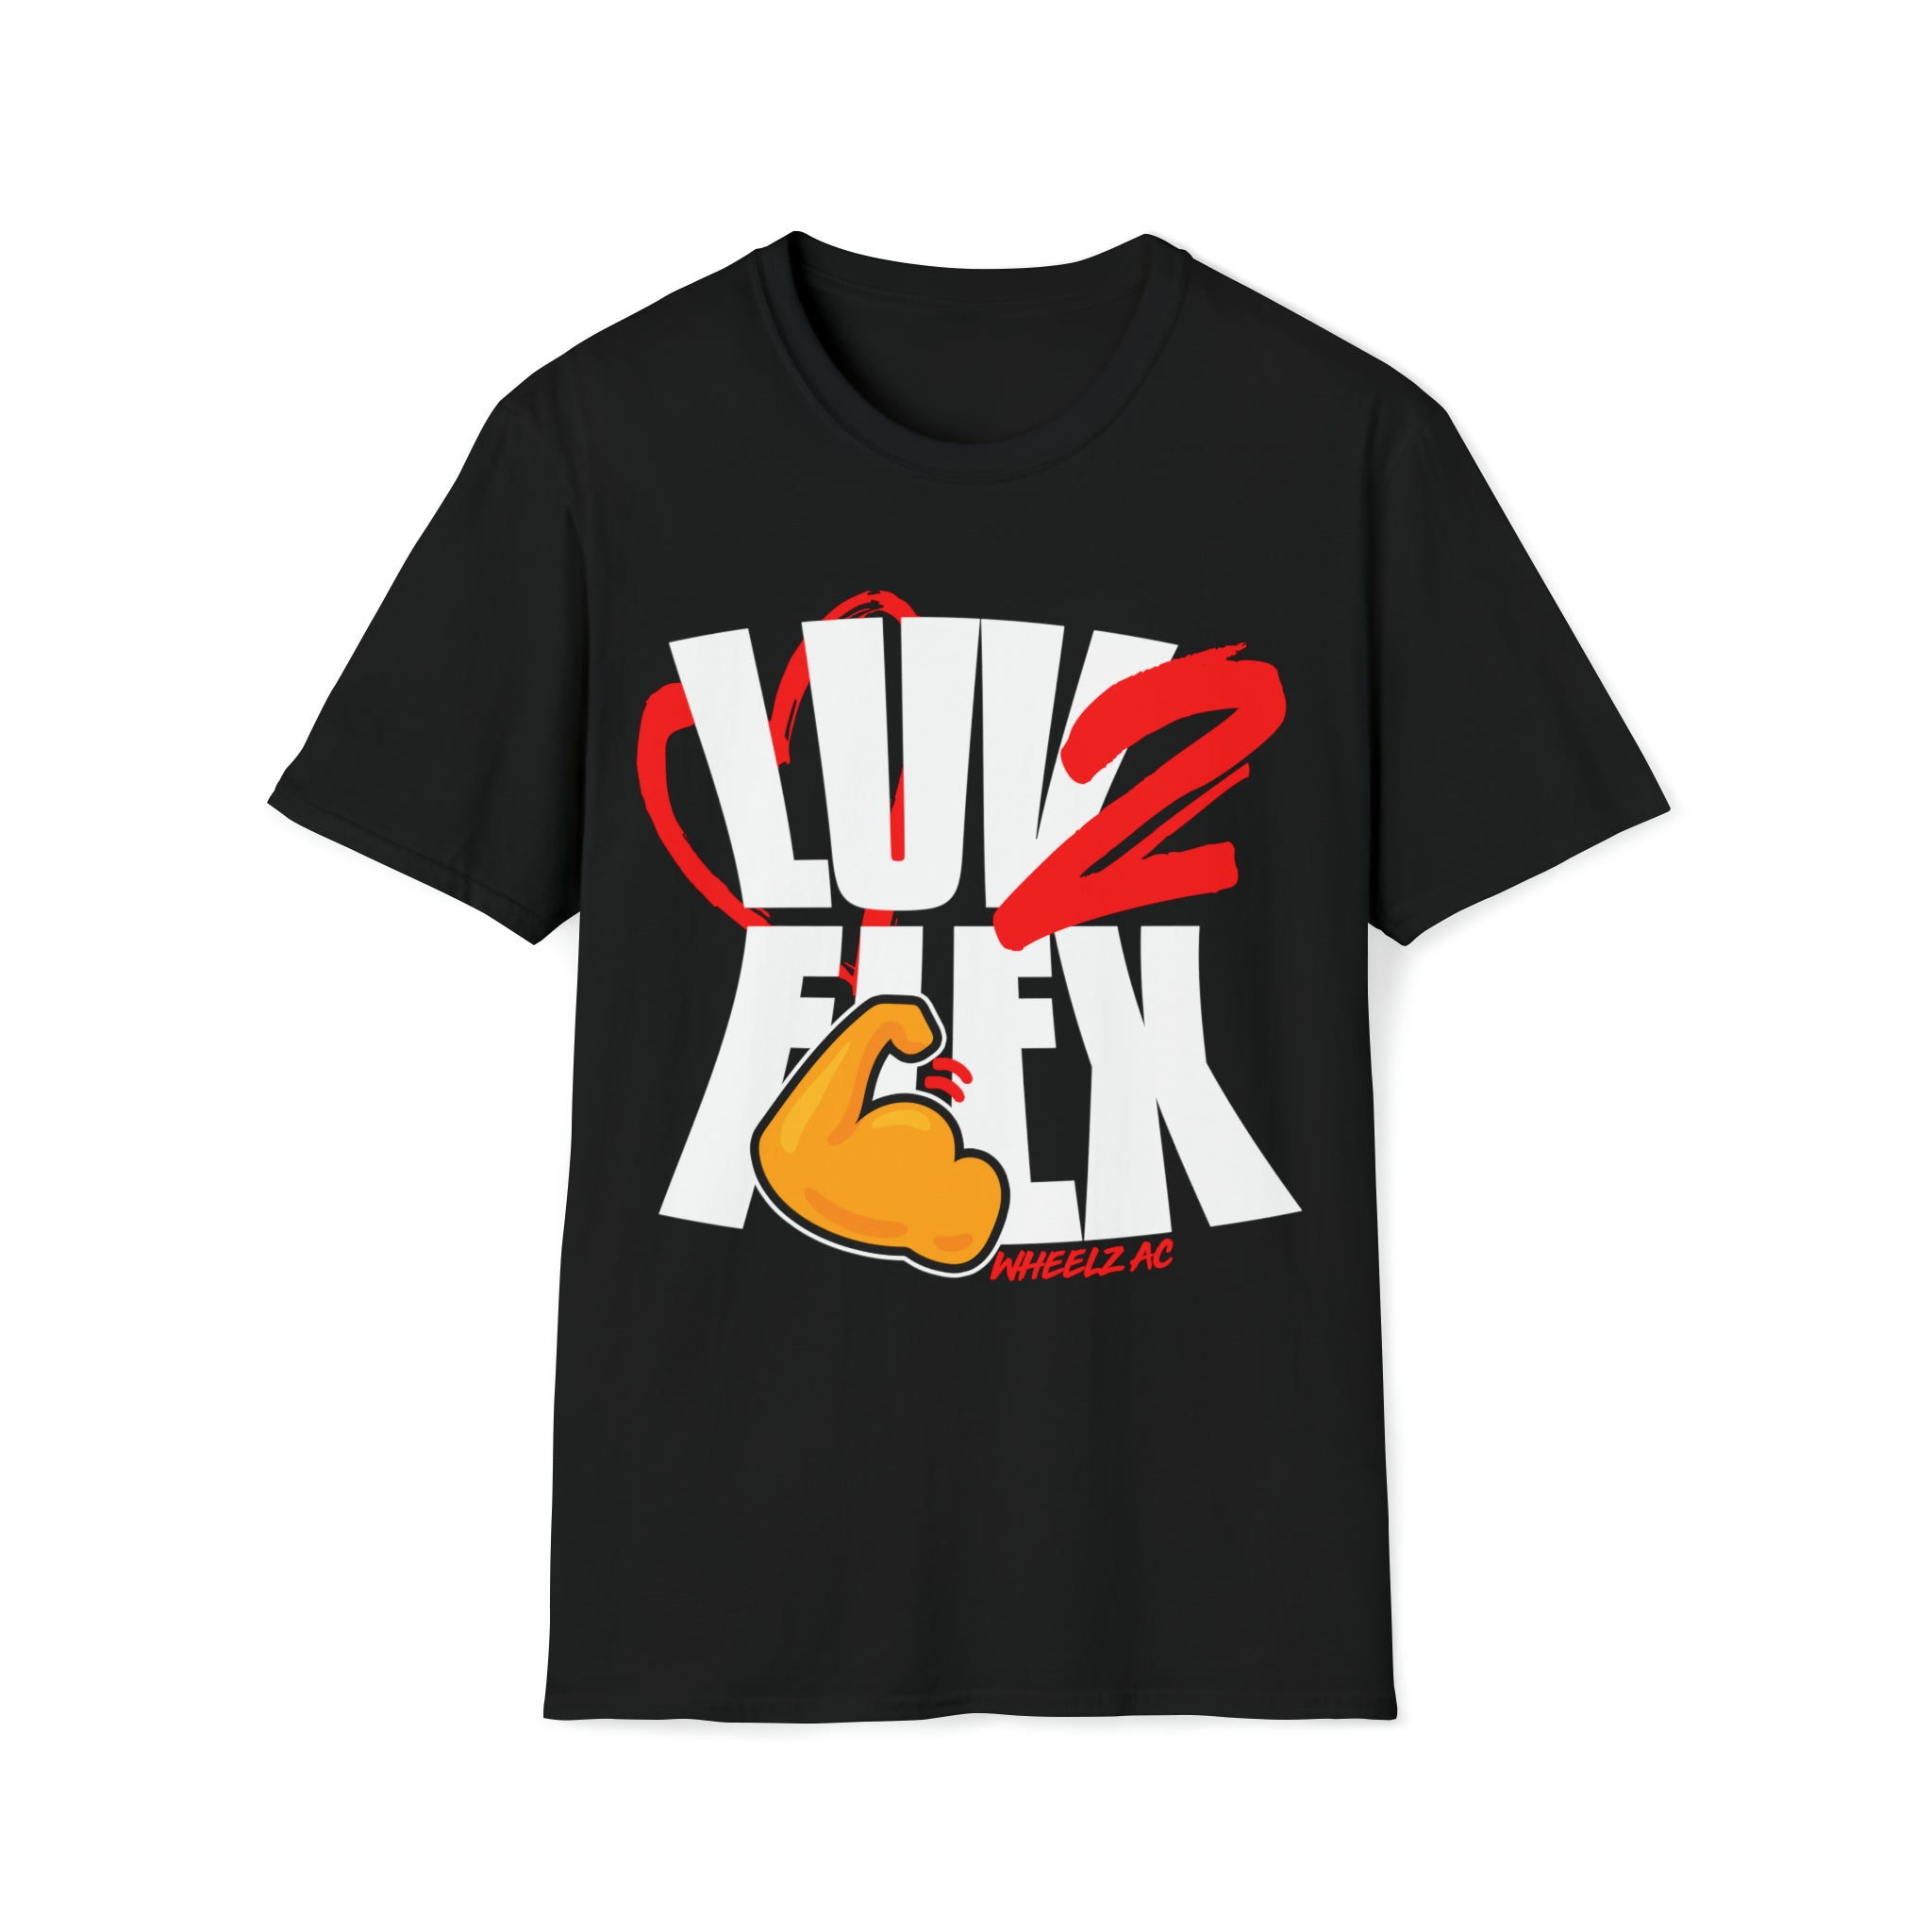 LUV 2 FLEX T-Shirt, black tee, flexing shirt.